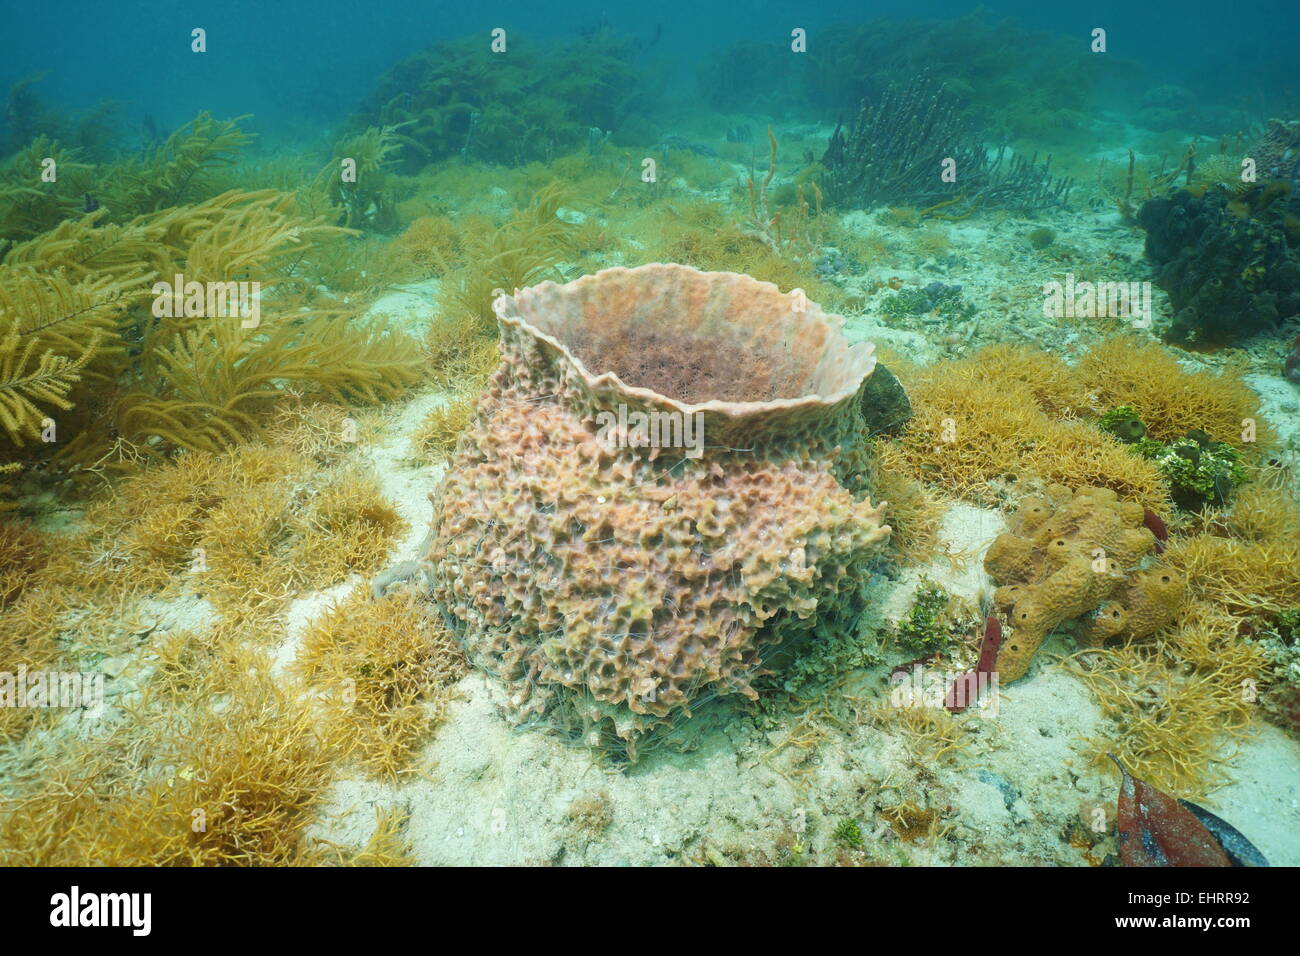 La créature sous-marine, canon géant, éponge Xestospongia muta, sur fond de la mer des Caraïbes Banque D'Images